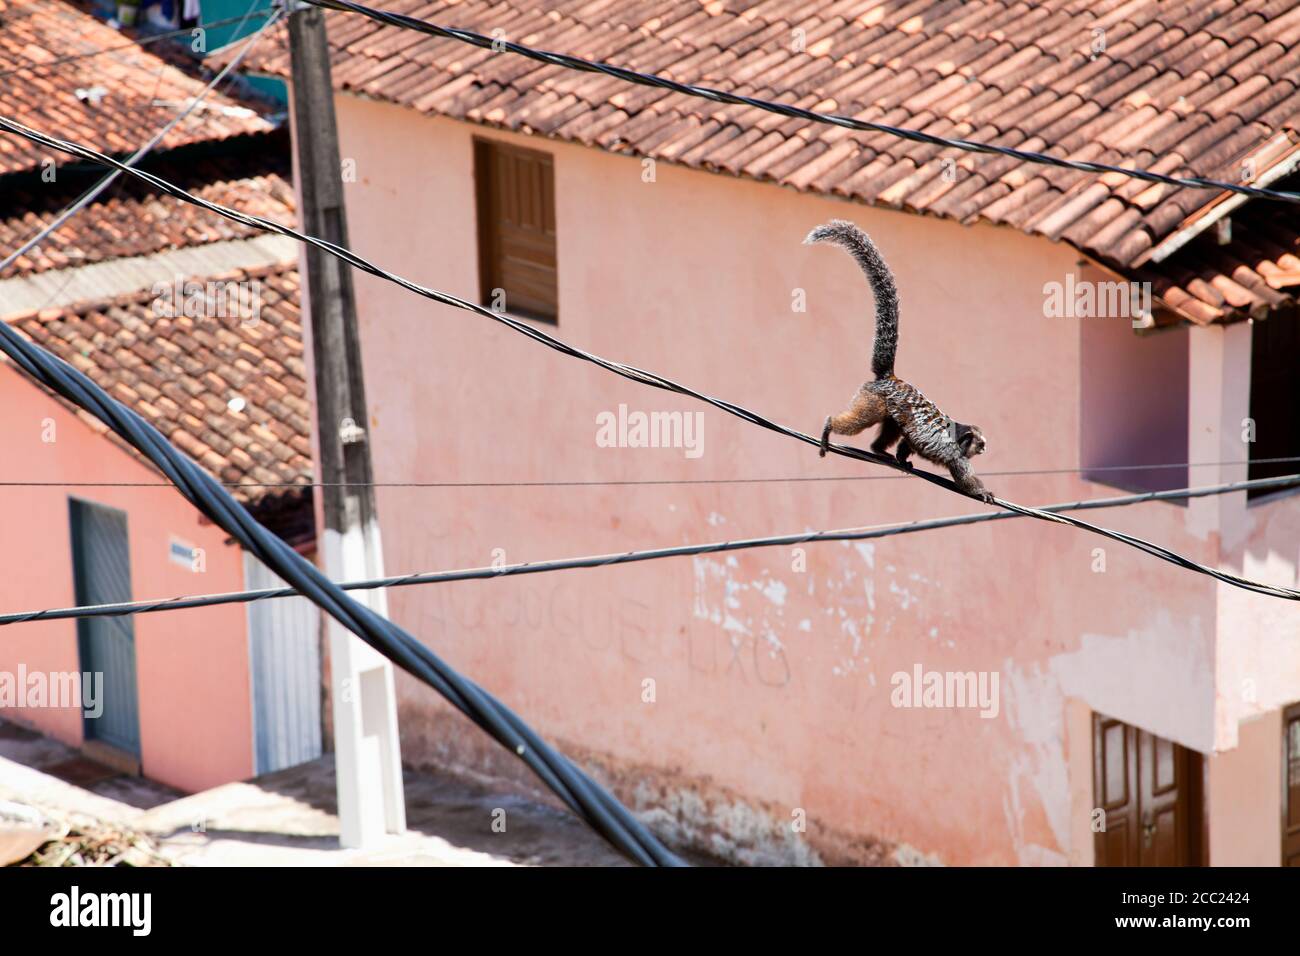 Brésil, Bahia, Monkey escalade sur les lignes électriques Banque D'Images